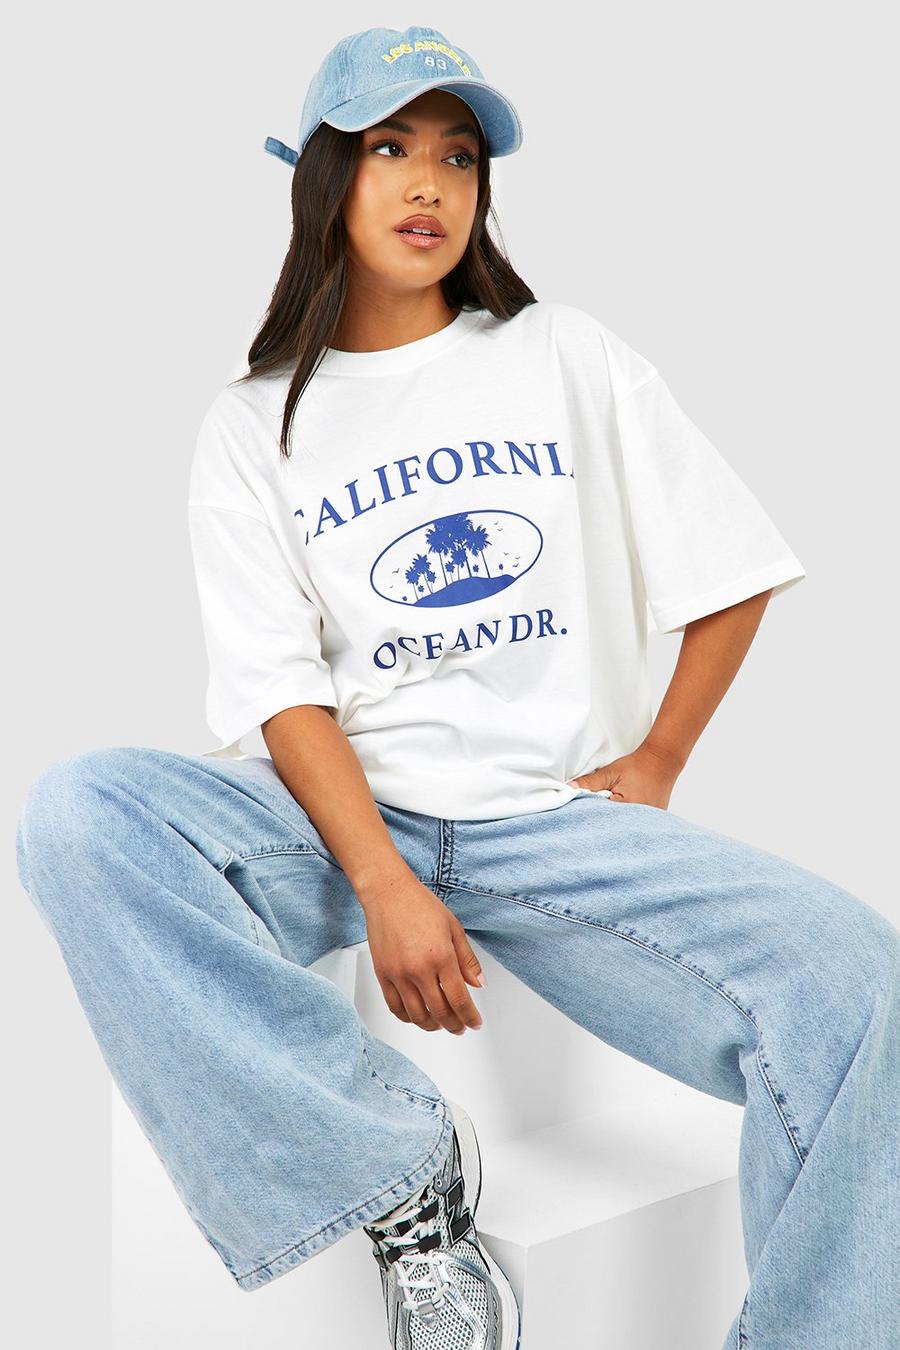 boohoo Petite California Slogan T-Shirt